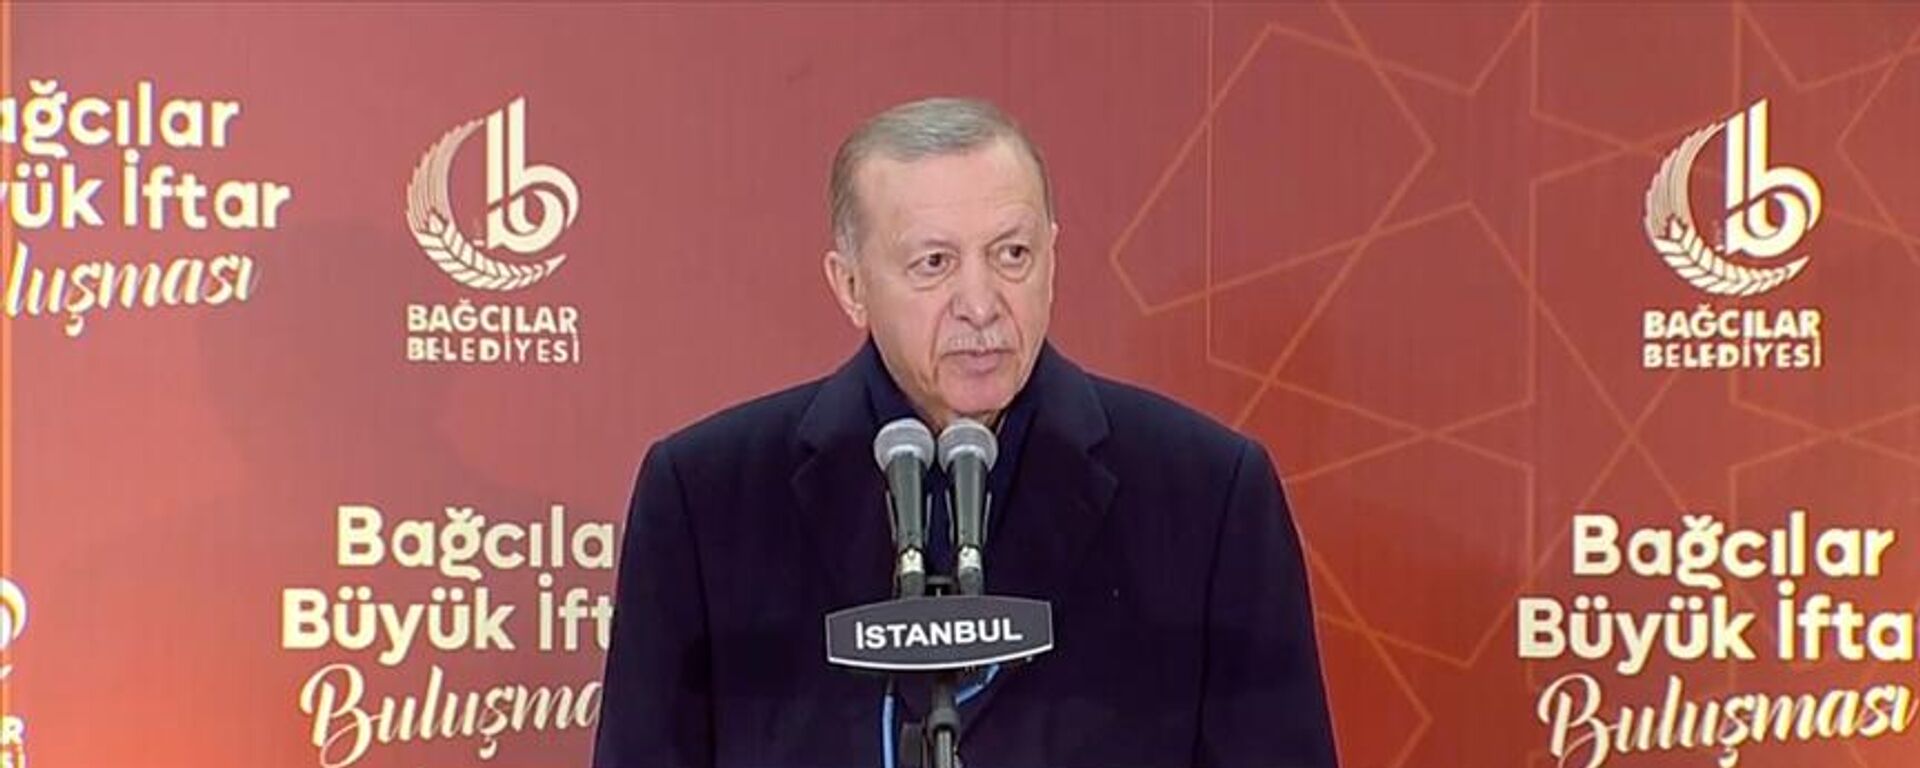 Cumhurbaşkanı Recep Tayyip Erdoğan, Bağcılar Büyük İftar Buluşması'nda konuştu.  - Sputnik Türkiye, 1920, 02.04.2023